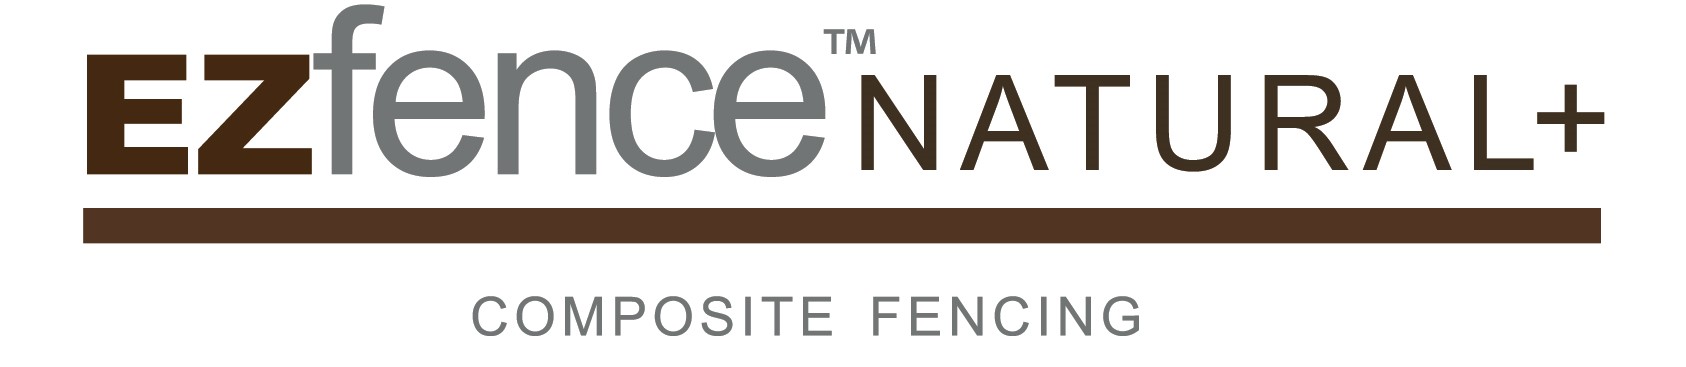 ezfence natural+ logo